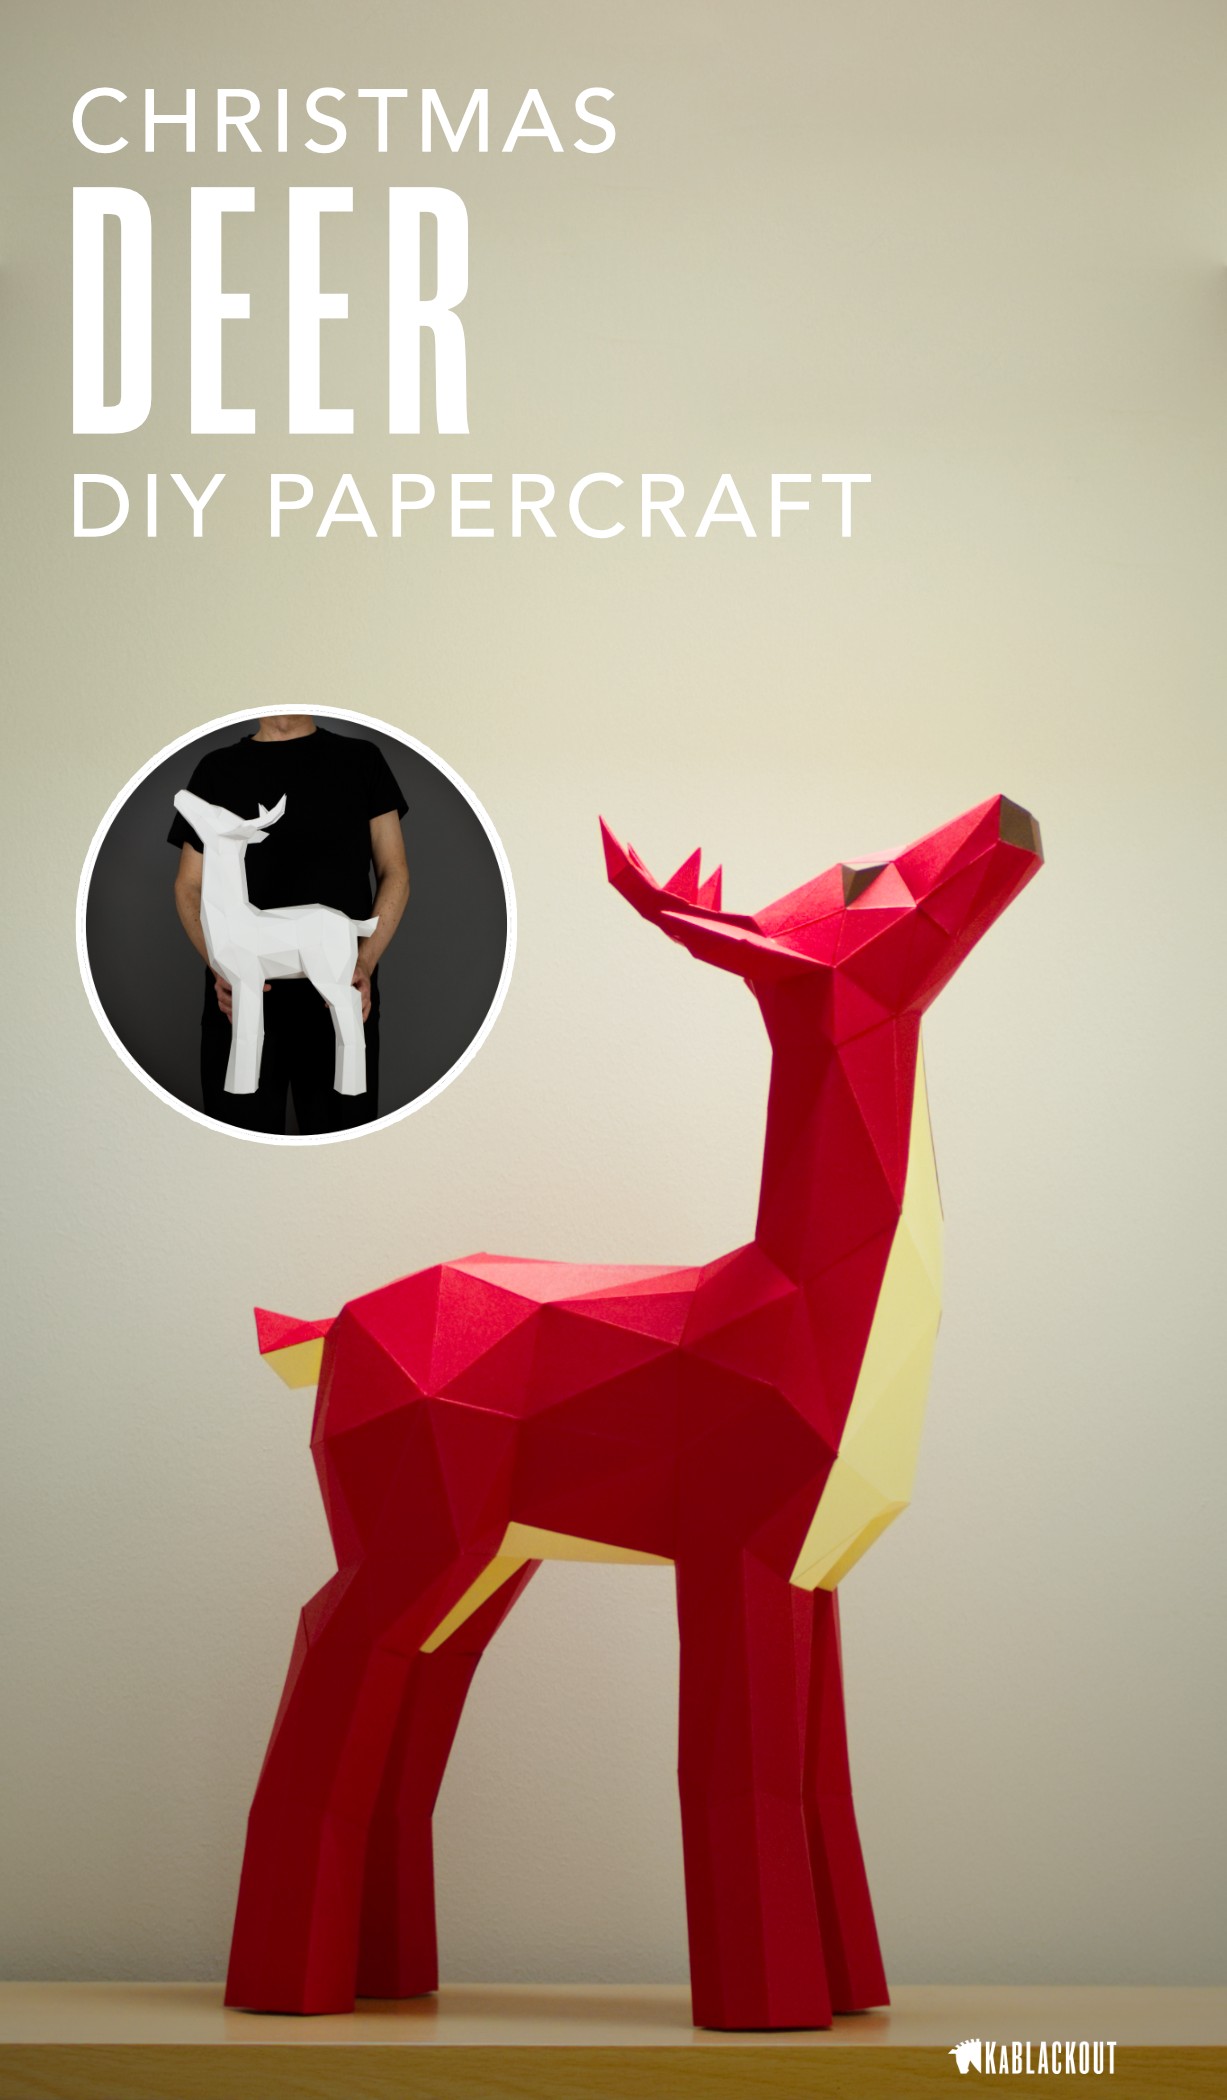 Papercraft Deer Head Deer Papercraft Papercraft Deer Diy Deer Low Poly Deer Deer